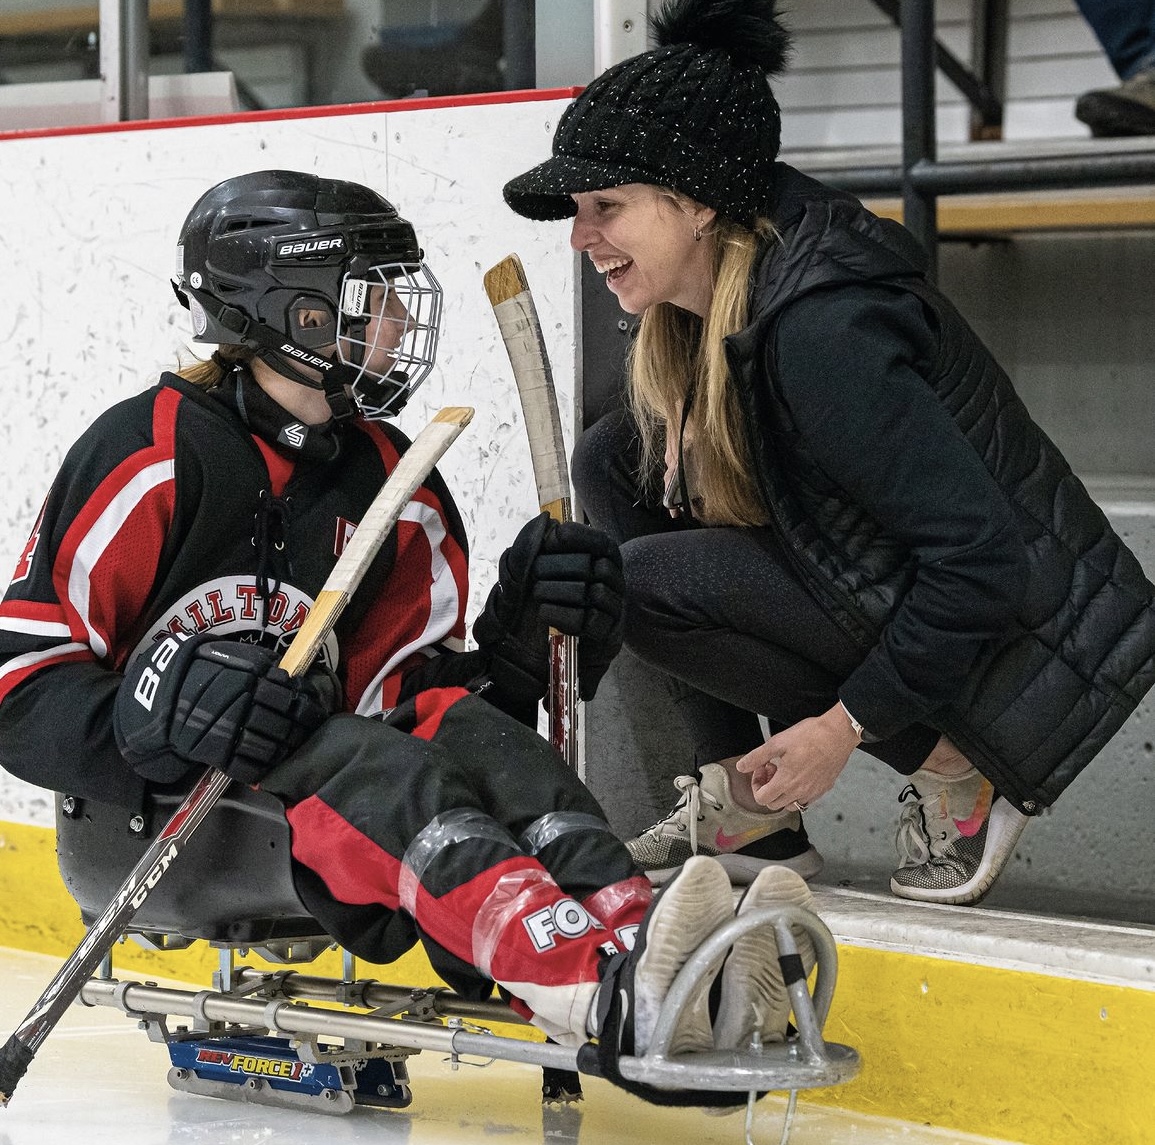 Jennifer Gallupe Roos, une femme blanche aux cheveux blonds, est agenouillée devant la porte ouverte d'un banc dans un stade de hockey, à côté d'un jeune athlète dans une luge de hockey. Jenn porte un chapeau noir et une veste noire, tandis que l'élève porte un casque et un équipement rouge et noir. 